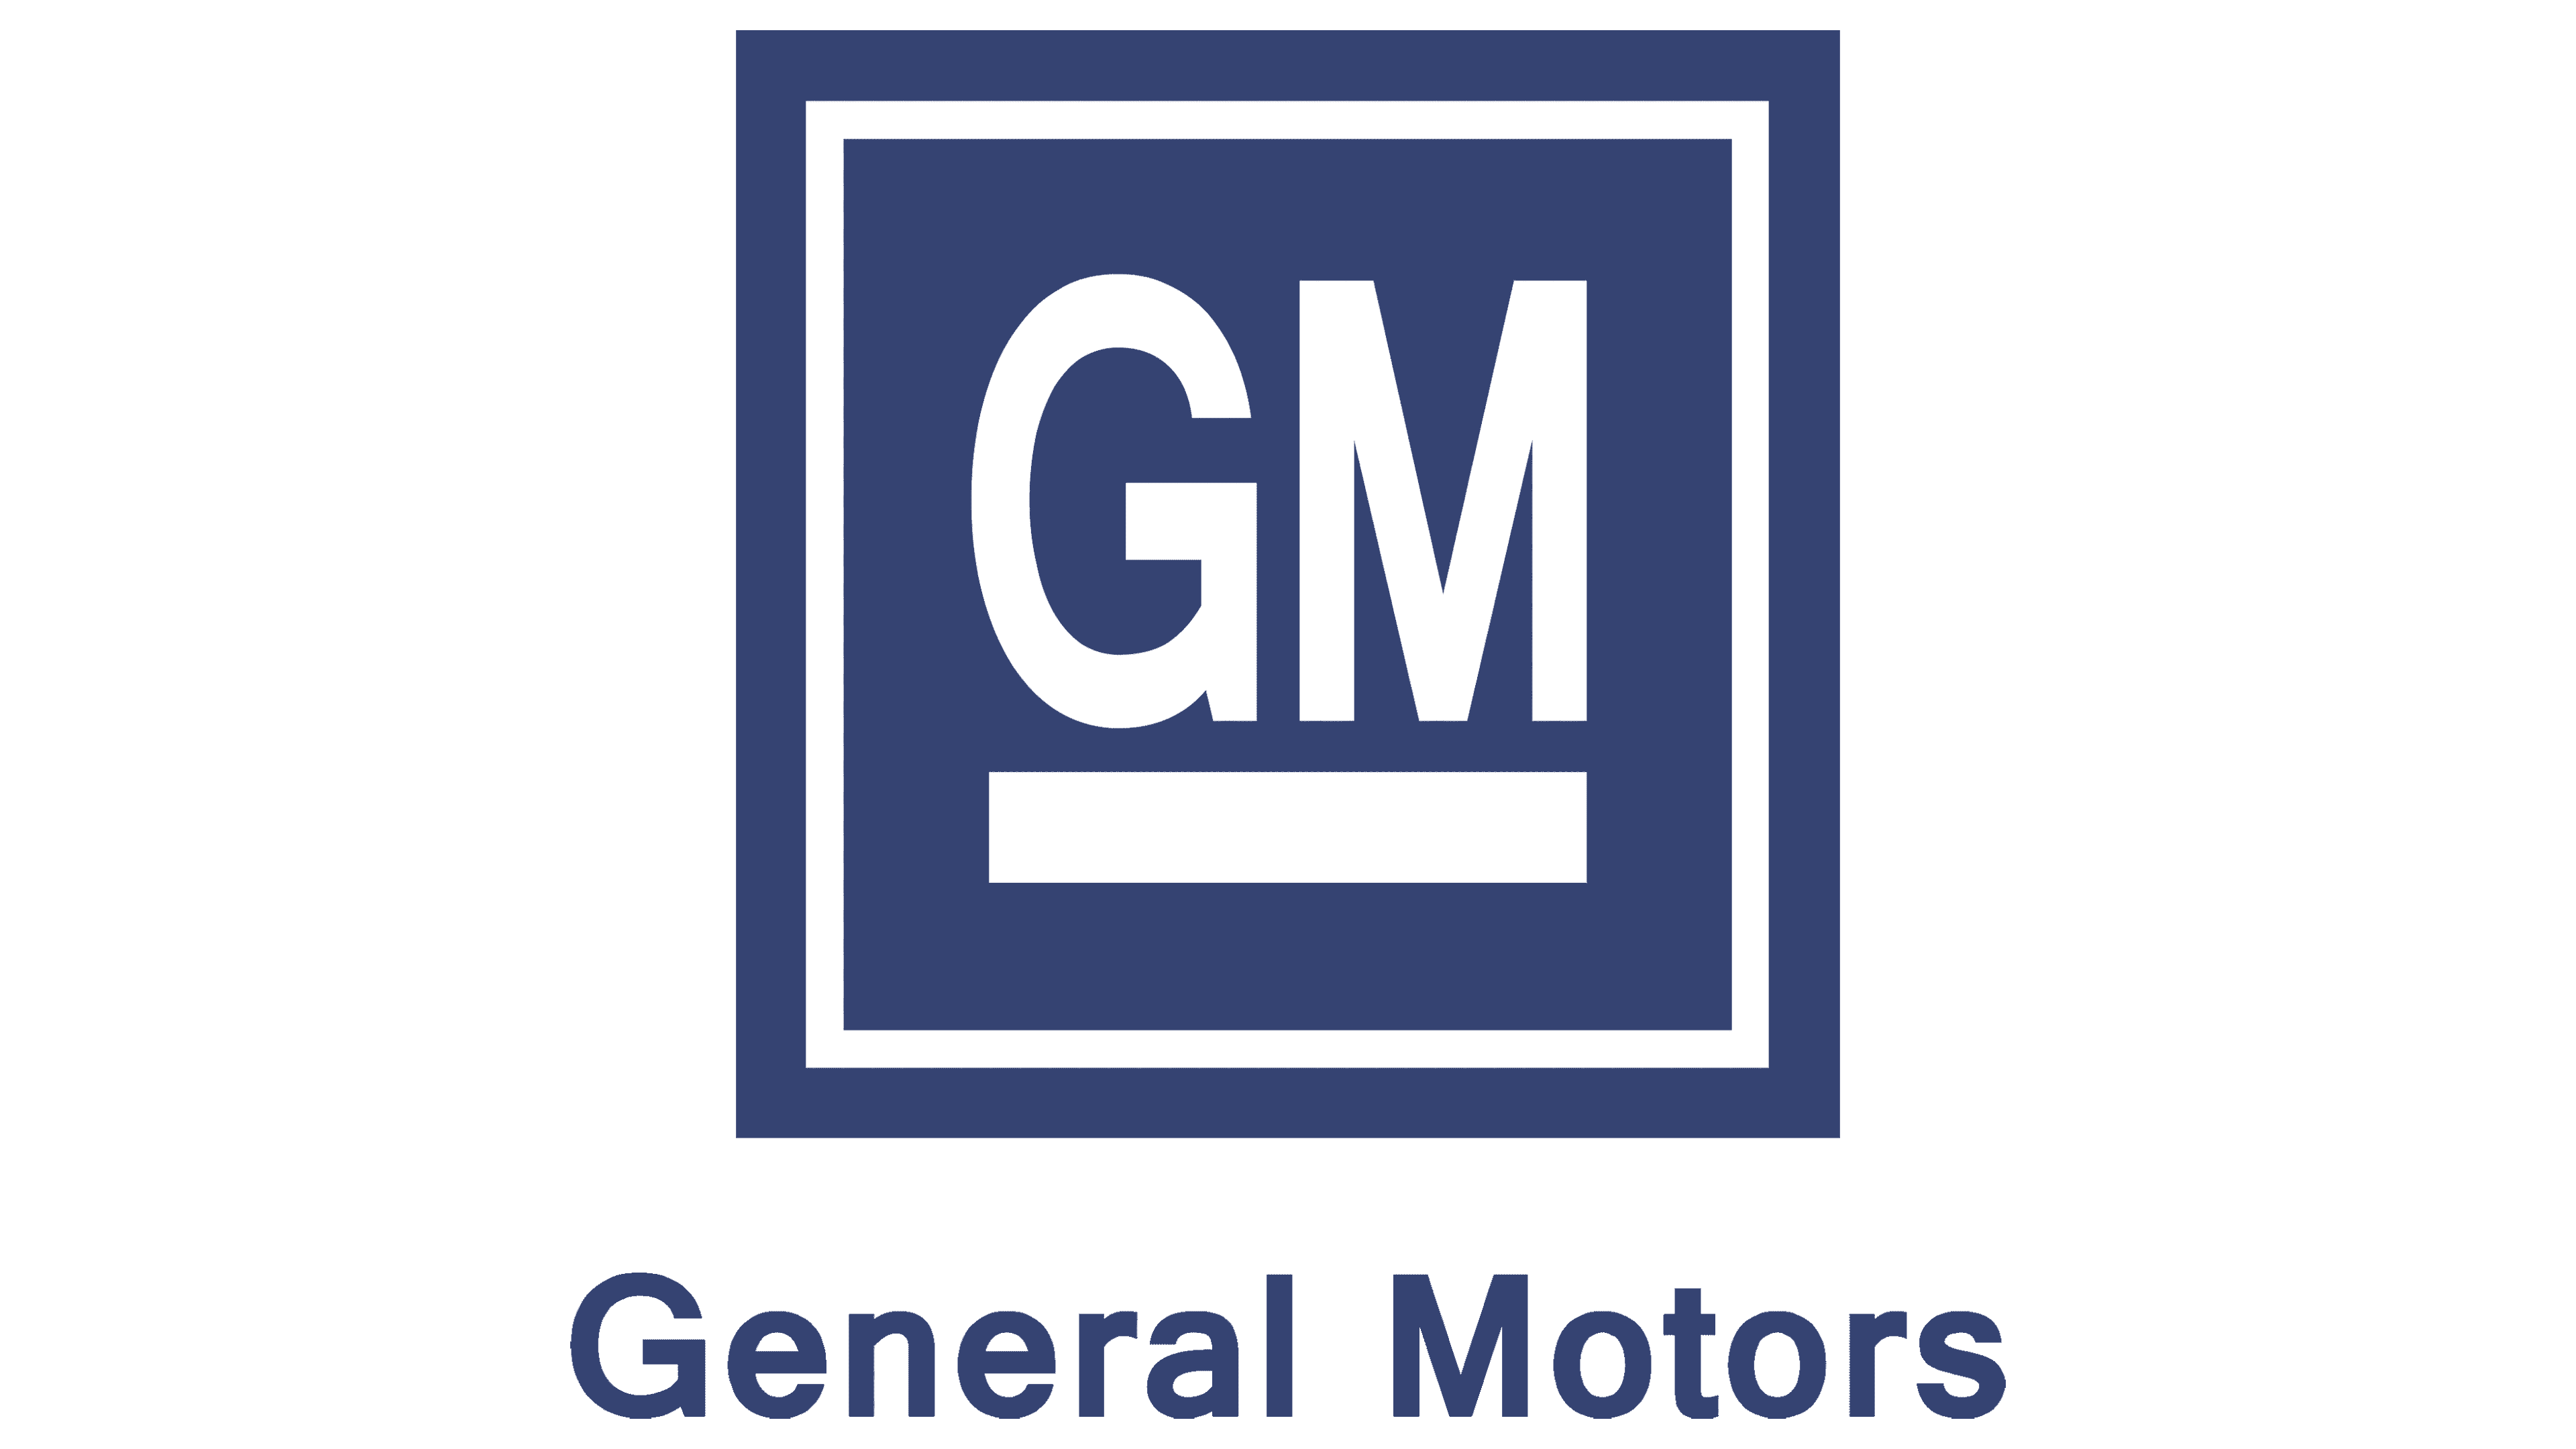 General Motors